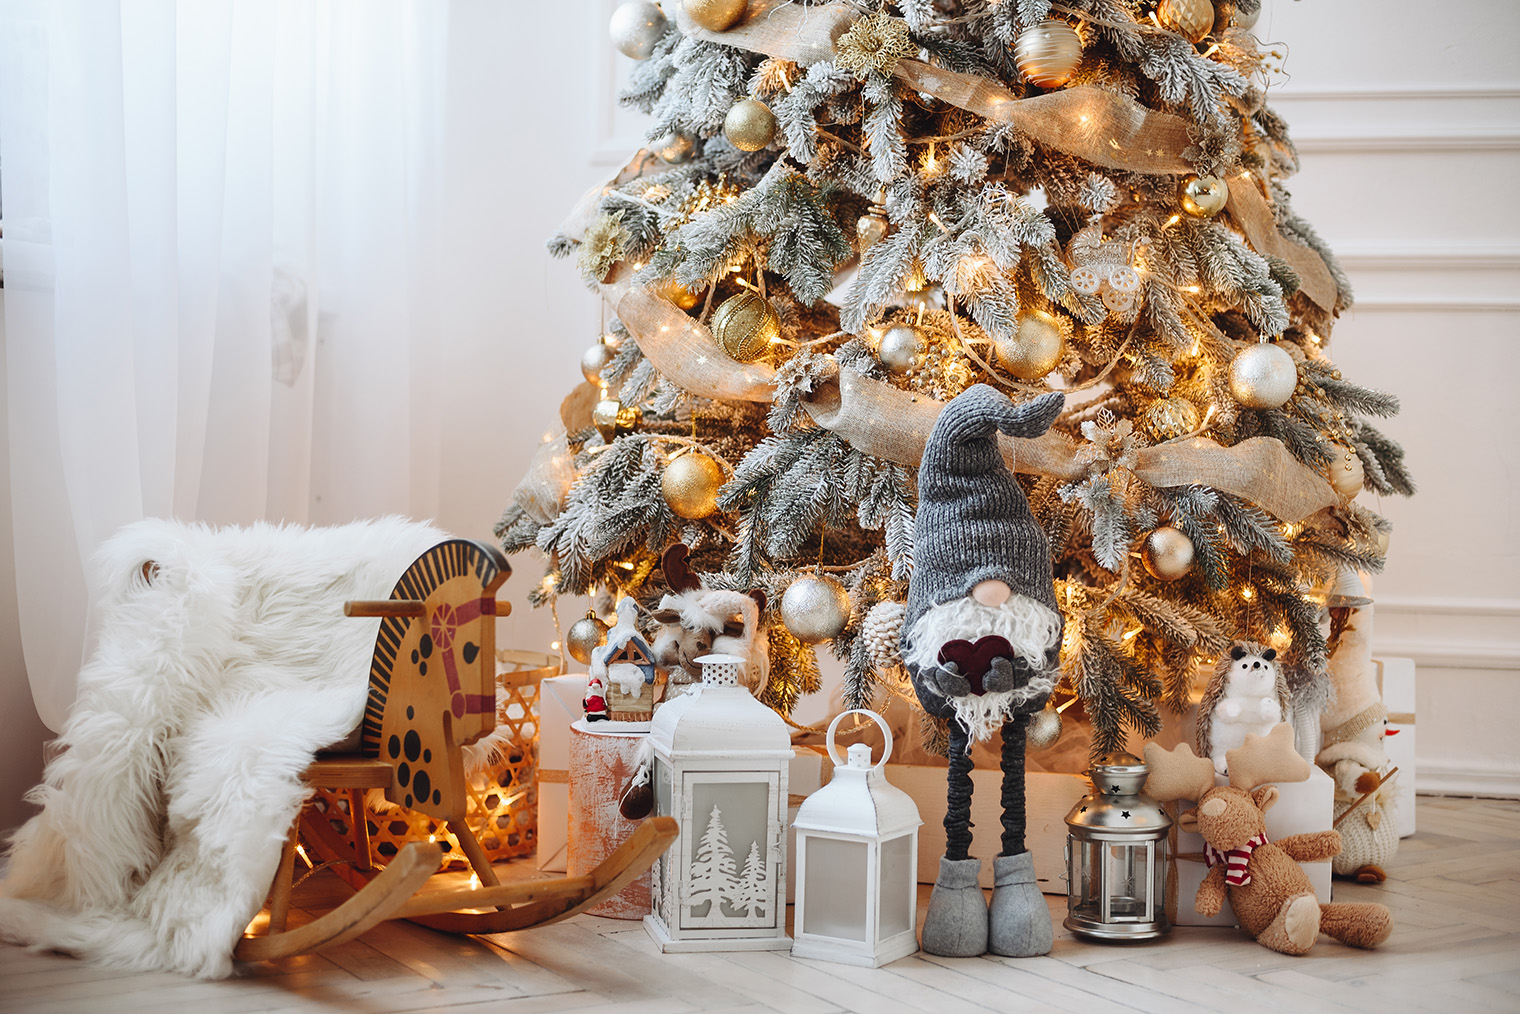 С елкой сочетаются детские игрушки, фонарики и прочий декор, который связан с детством и создает праздничное настроение. Фотография: maxfoto.shutter / Shutterstock